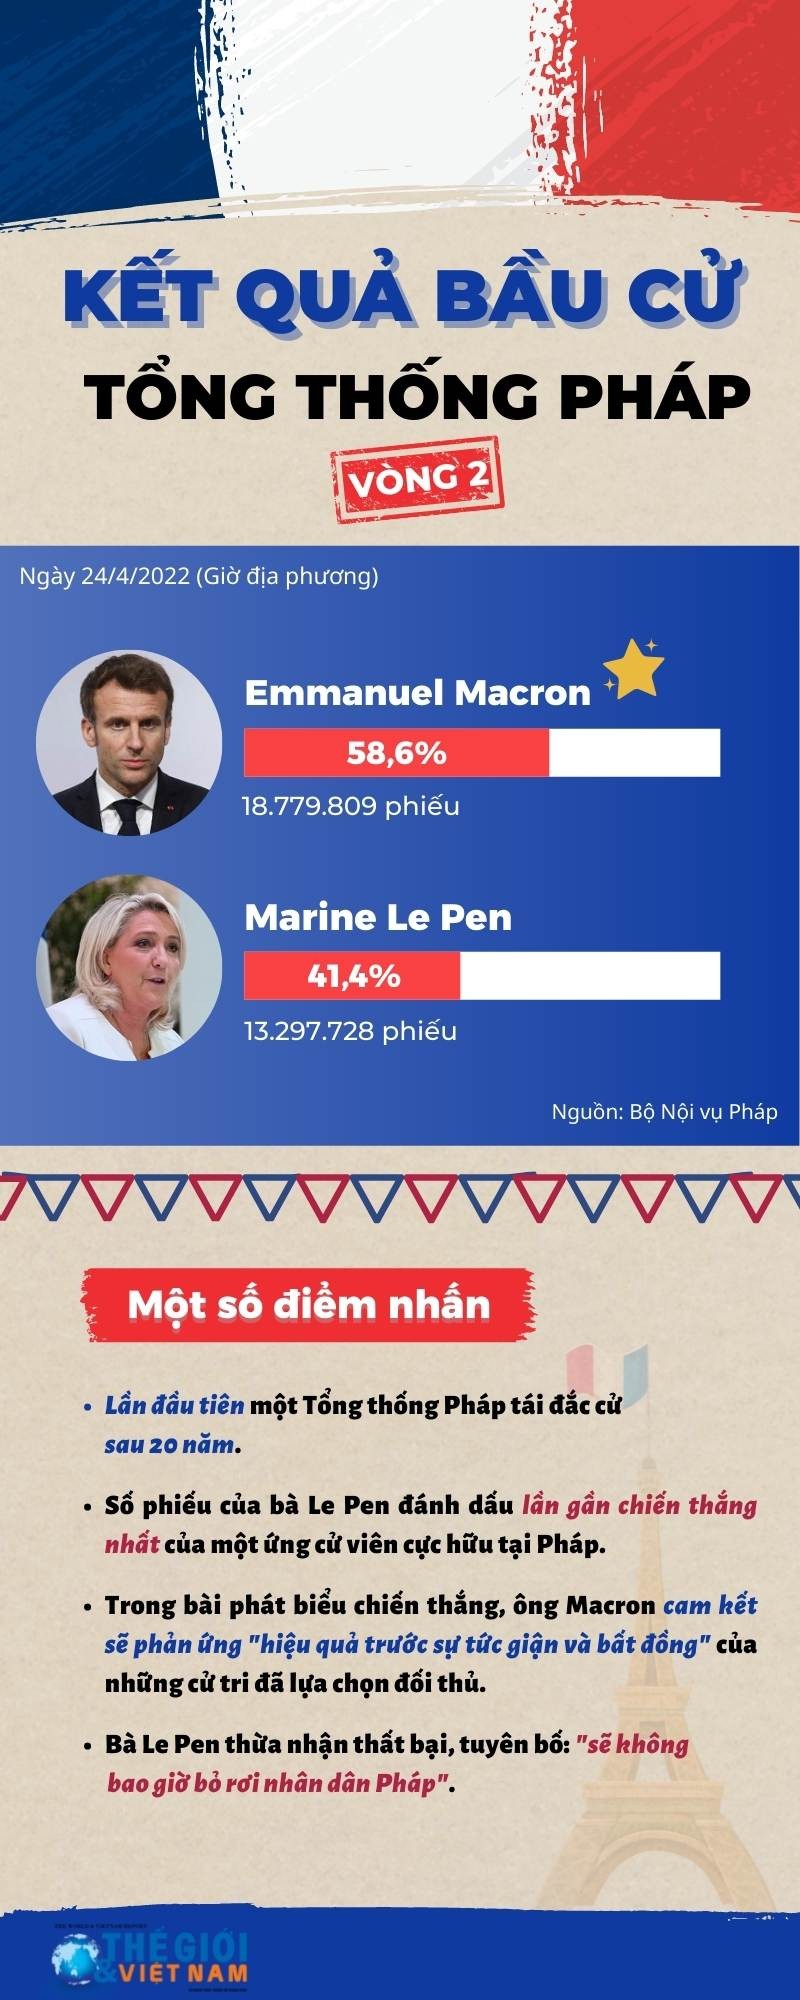 Bầu cử tổng thống Pháp 2022: Một số điểm nhấn